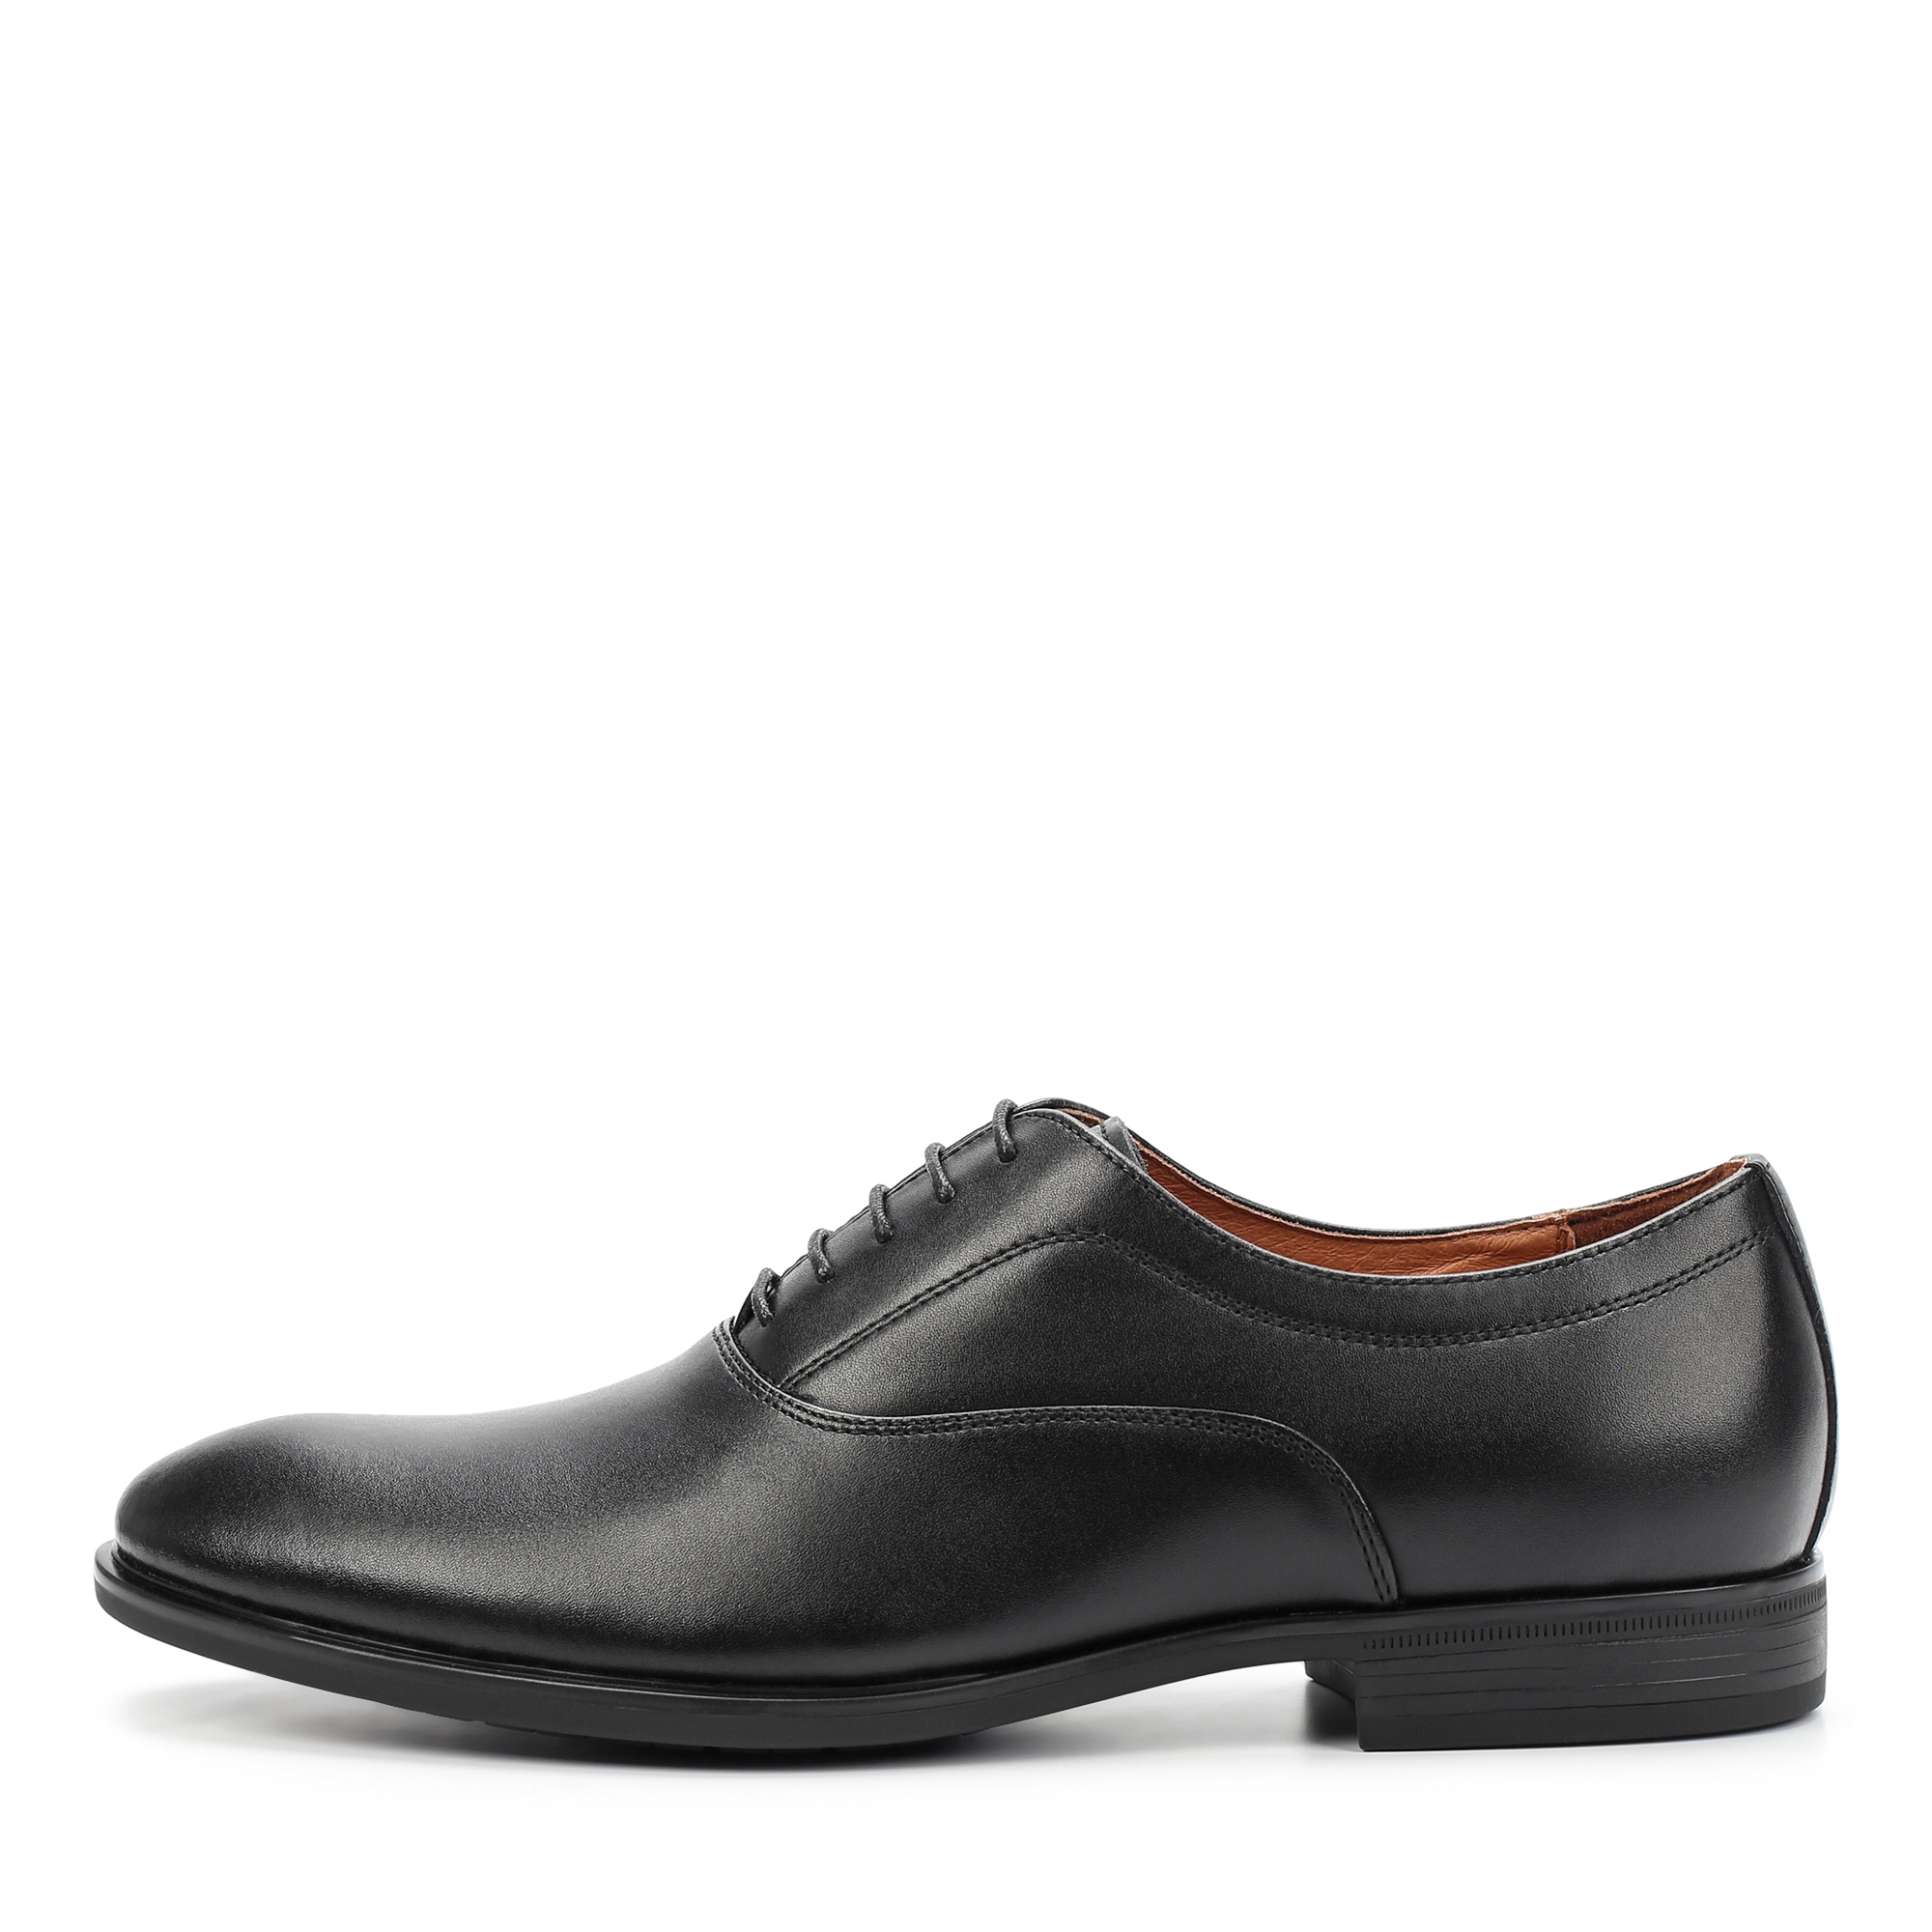 Туфли/полуботинки Thomas Munz 058-852A-1602, цвет черный, размер 42